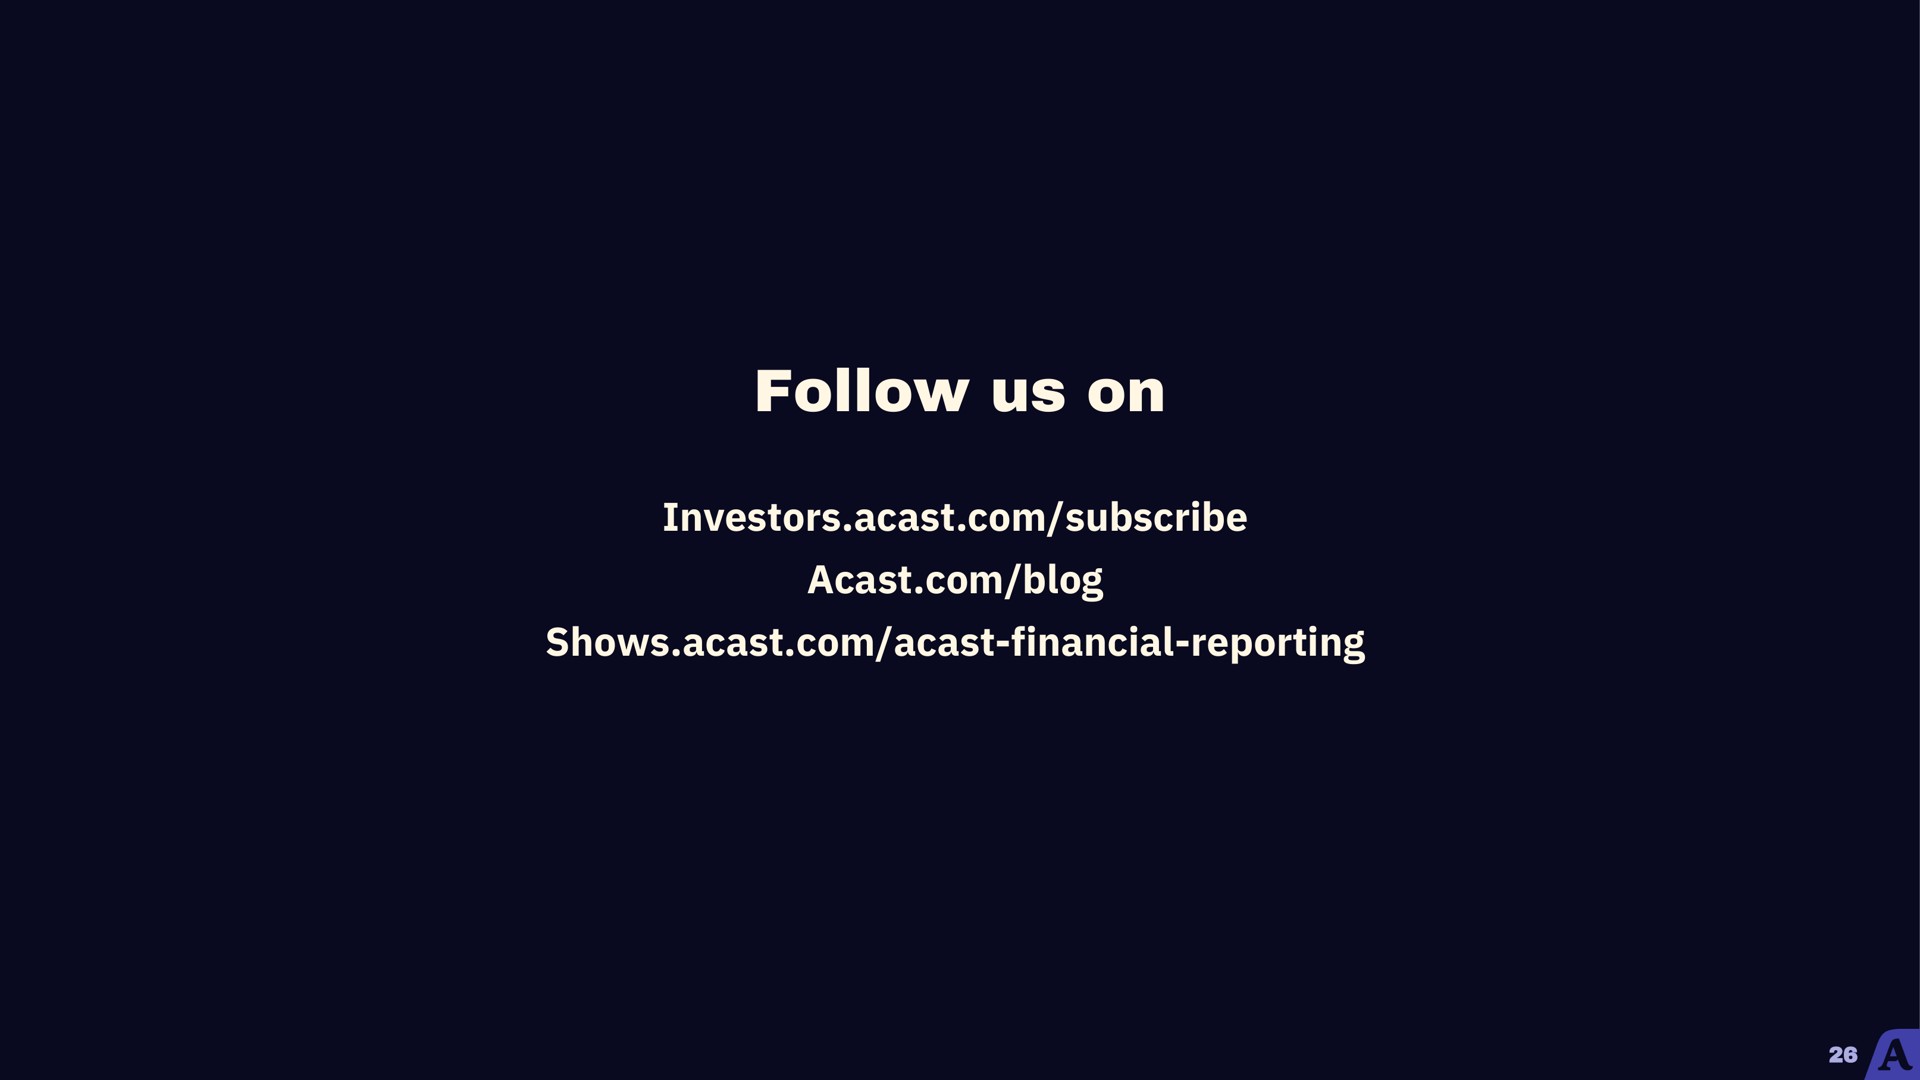 follow us on | Acast